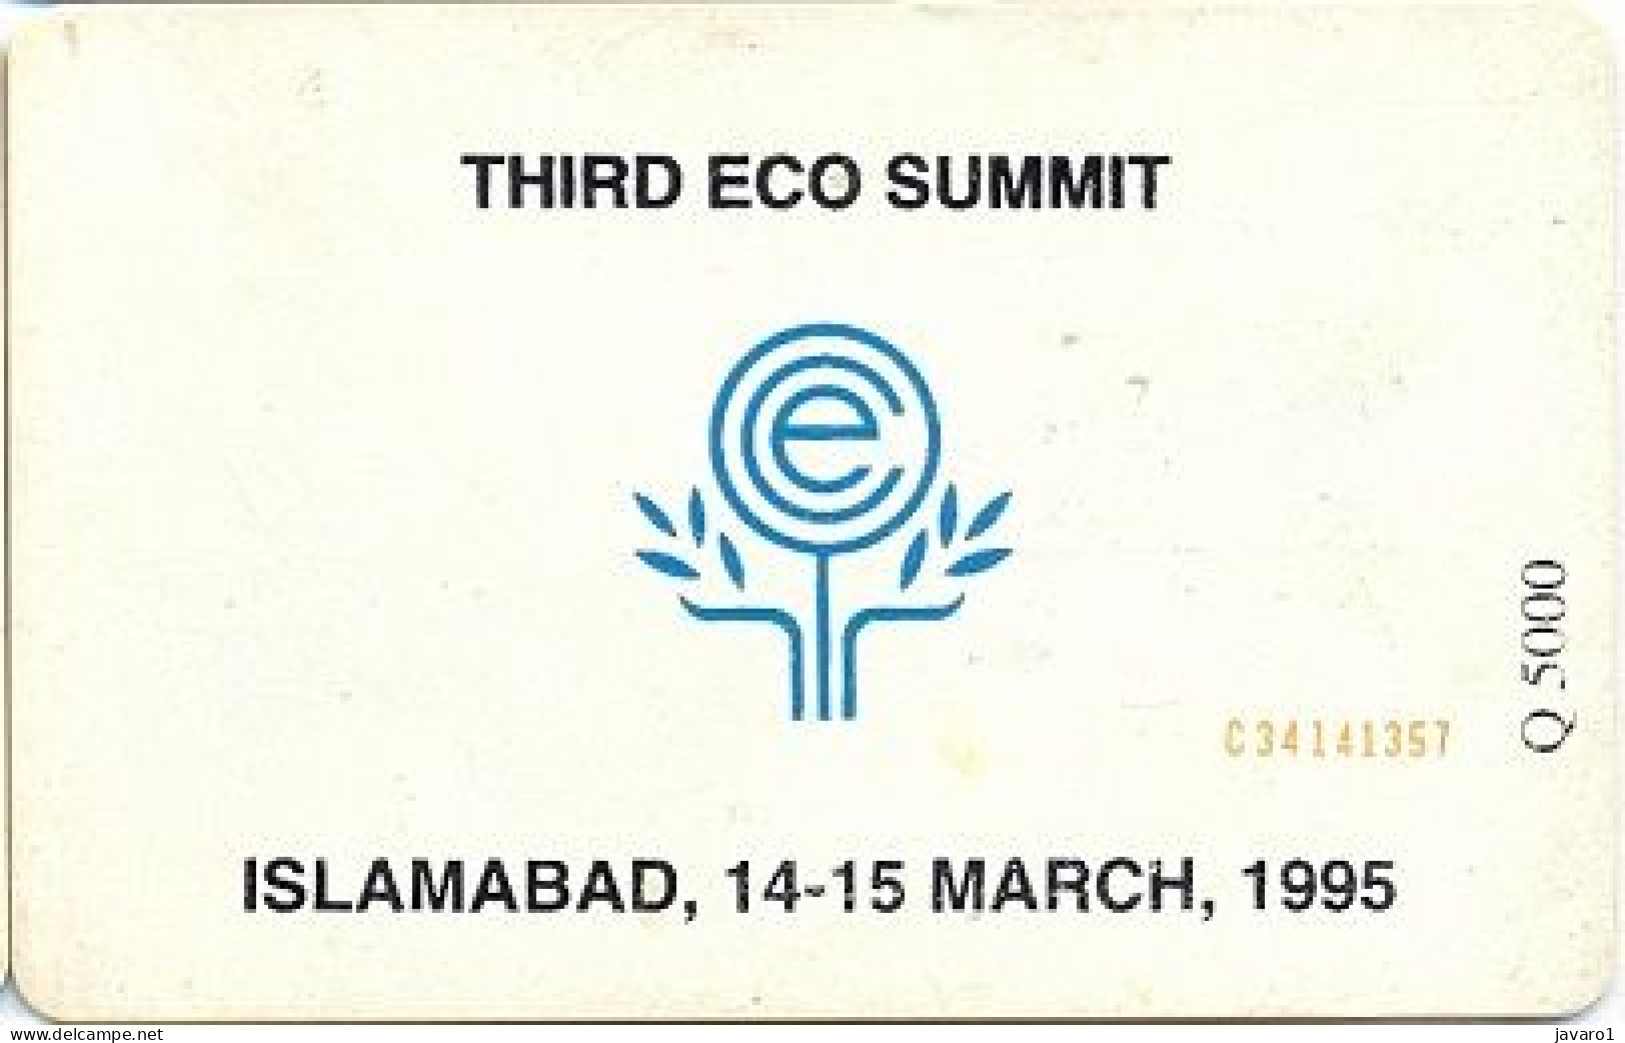 PAKMAP : WP06019 30 THIRD ECO SUMMIT ISLAMABAD 14/3/95 USED - Pakistan